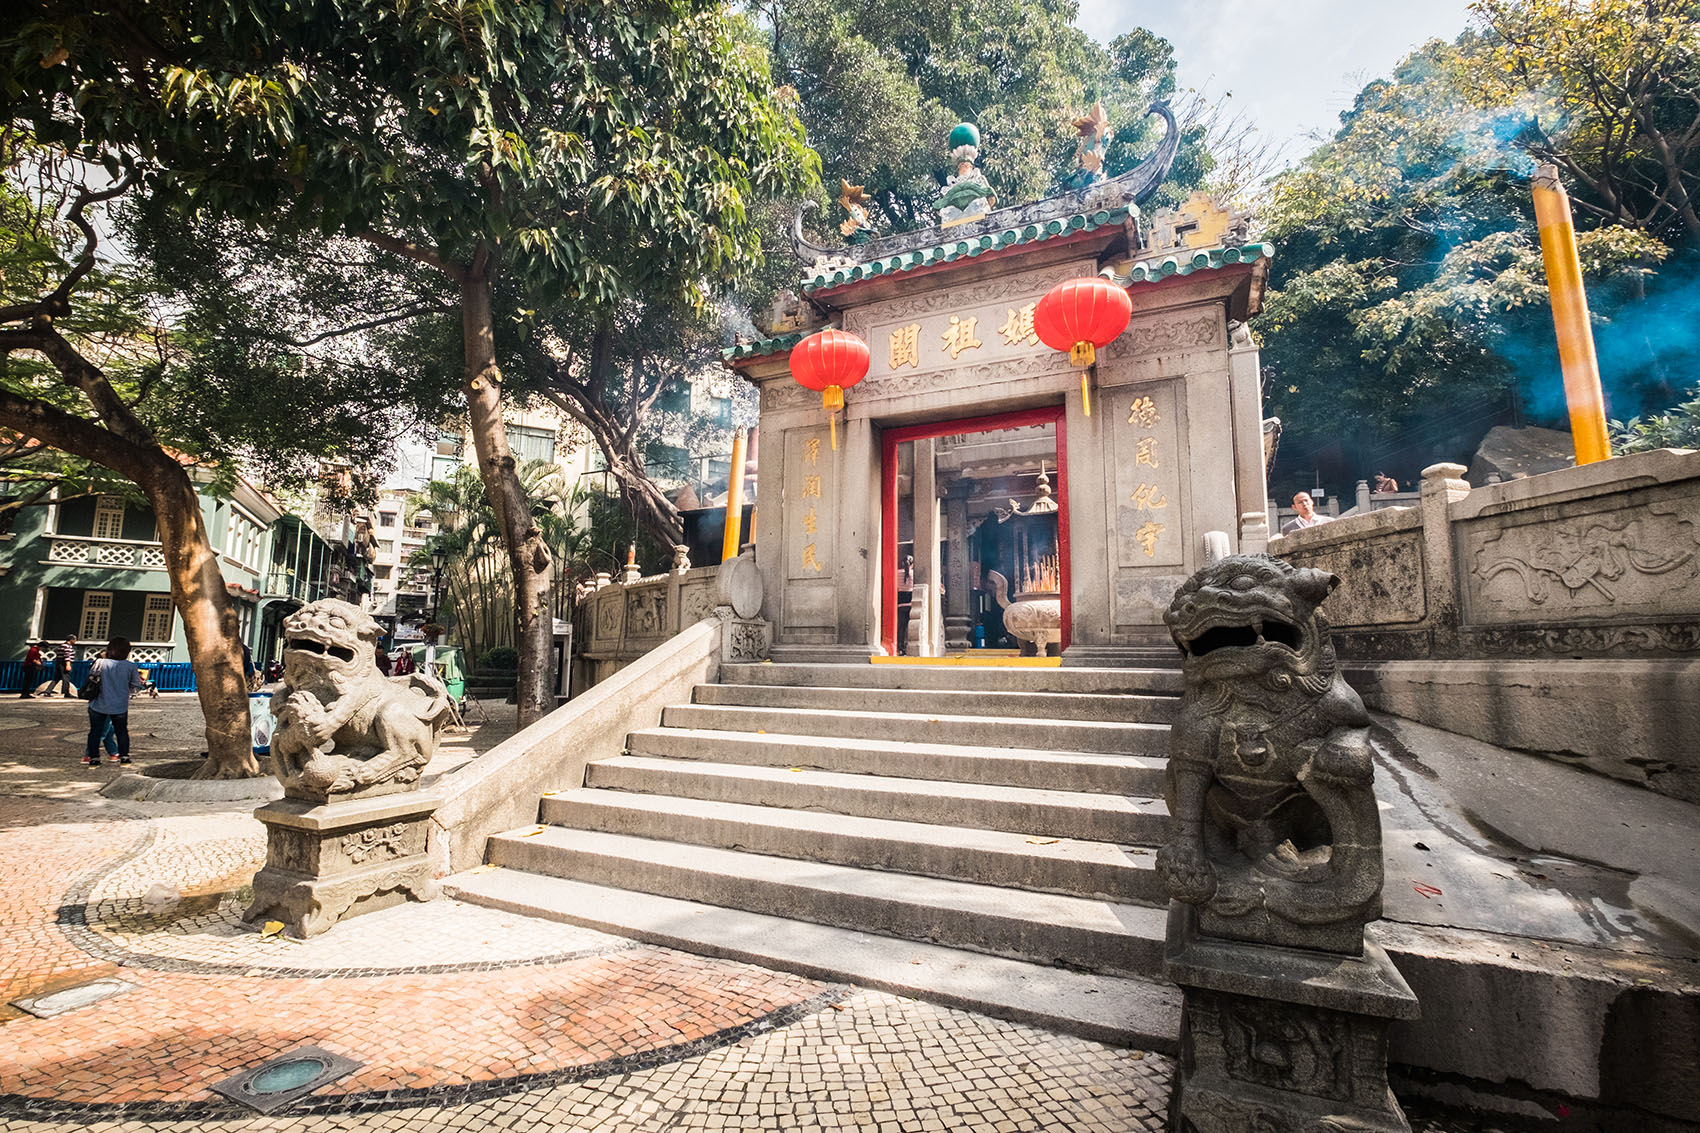 A-Ma Temple: Entrance